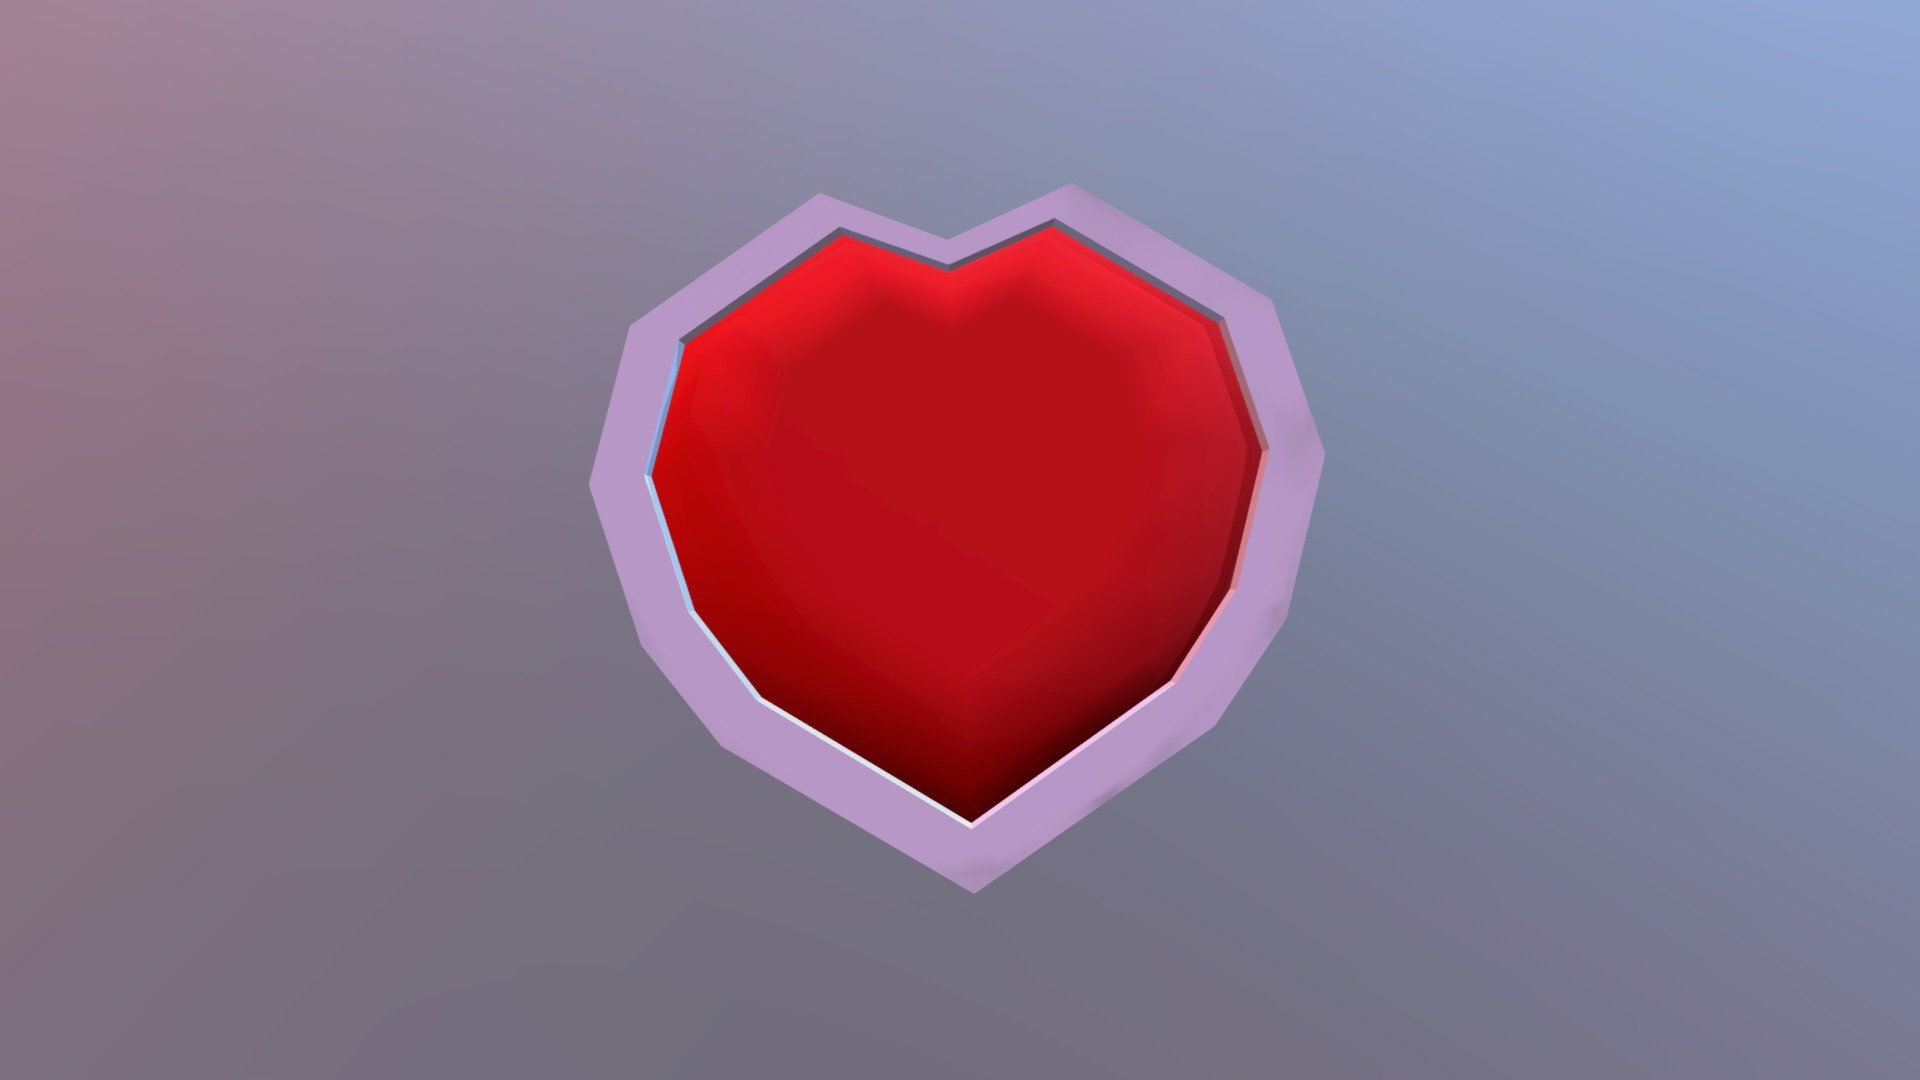 Zelda 1 Heart Container